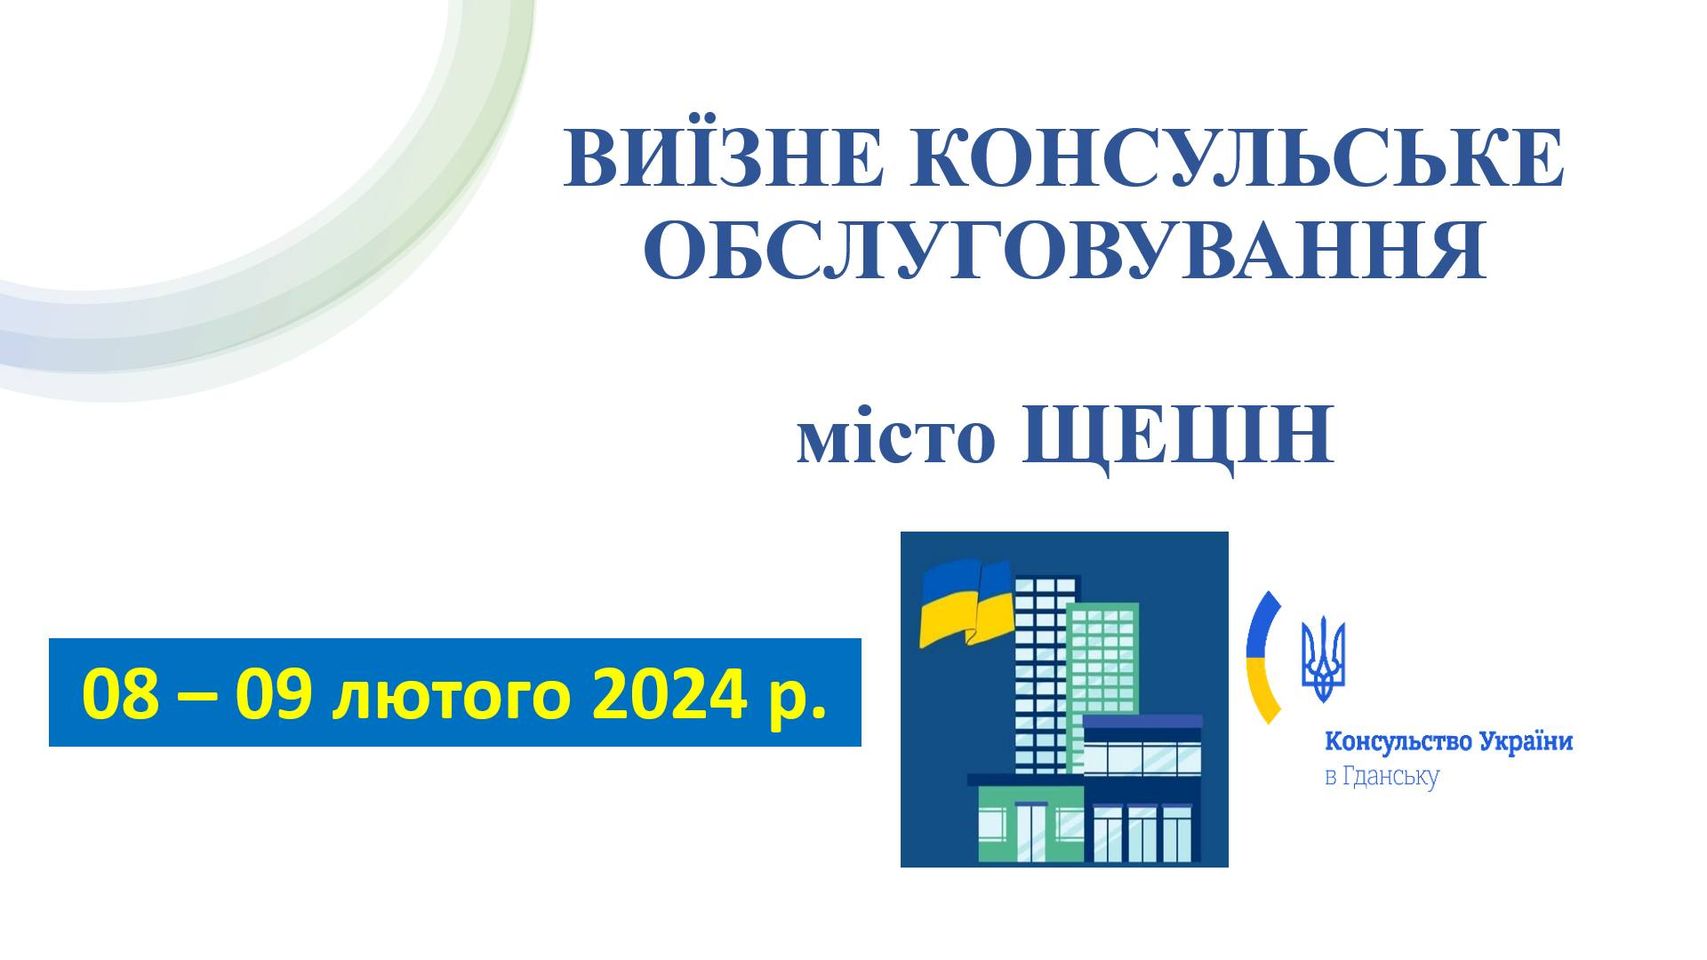 8-9 лютого 2024 року Консульство України в Гданську здійснить виїзне консульське обслуговування у місті Щецін